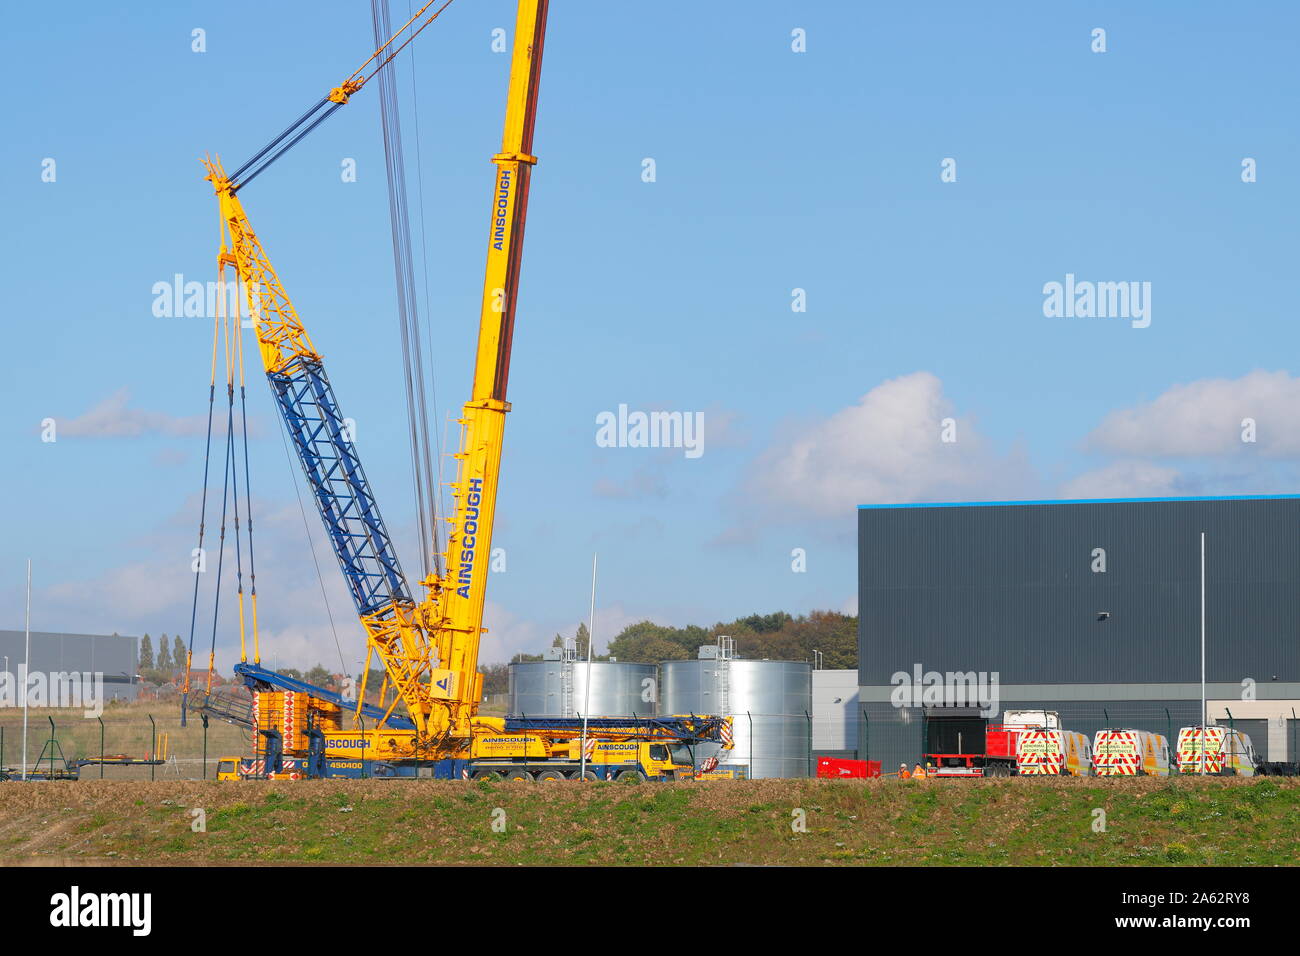 Amazon Warehouse Stockfotos und -bilder Kaufen - Seite 2 - Alamy